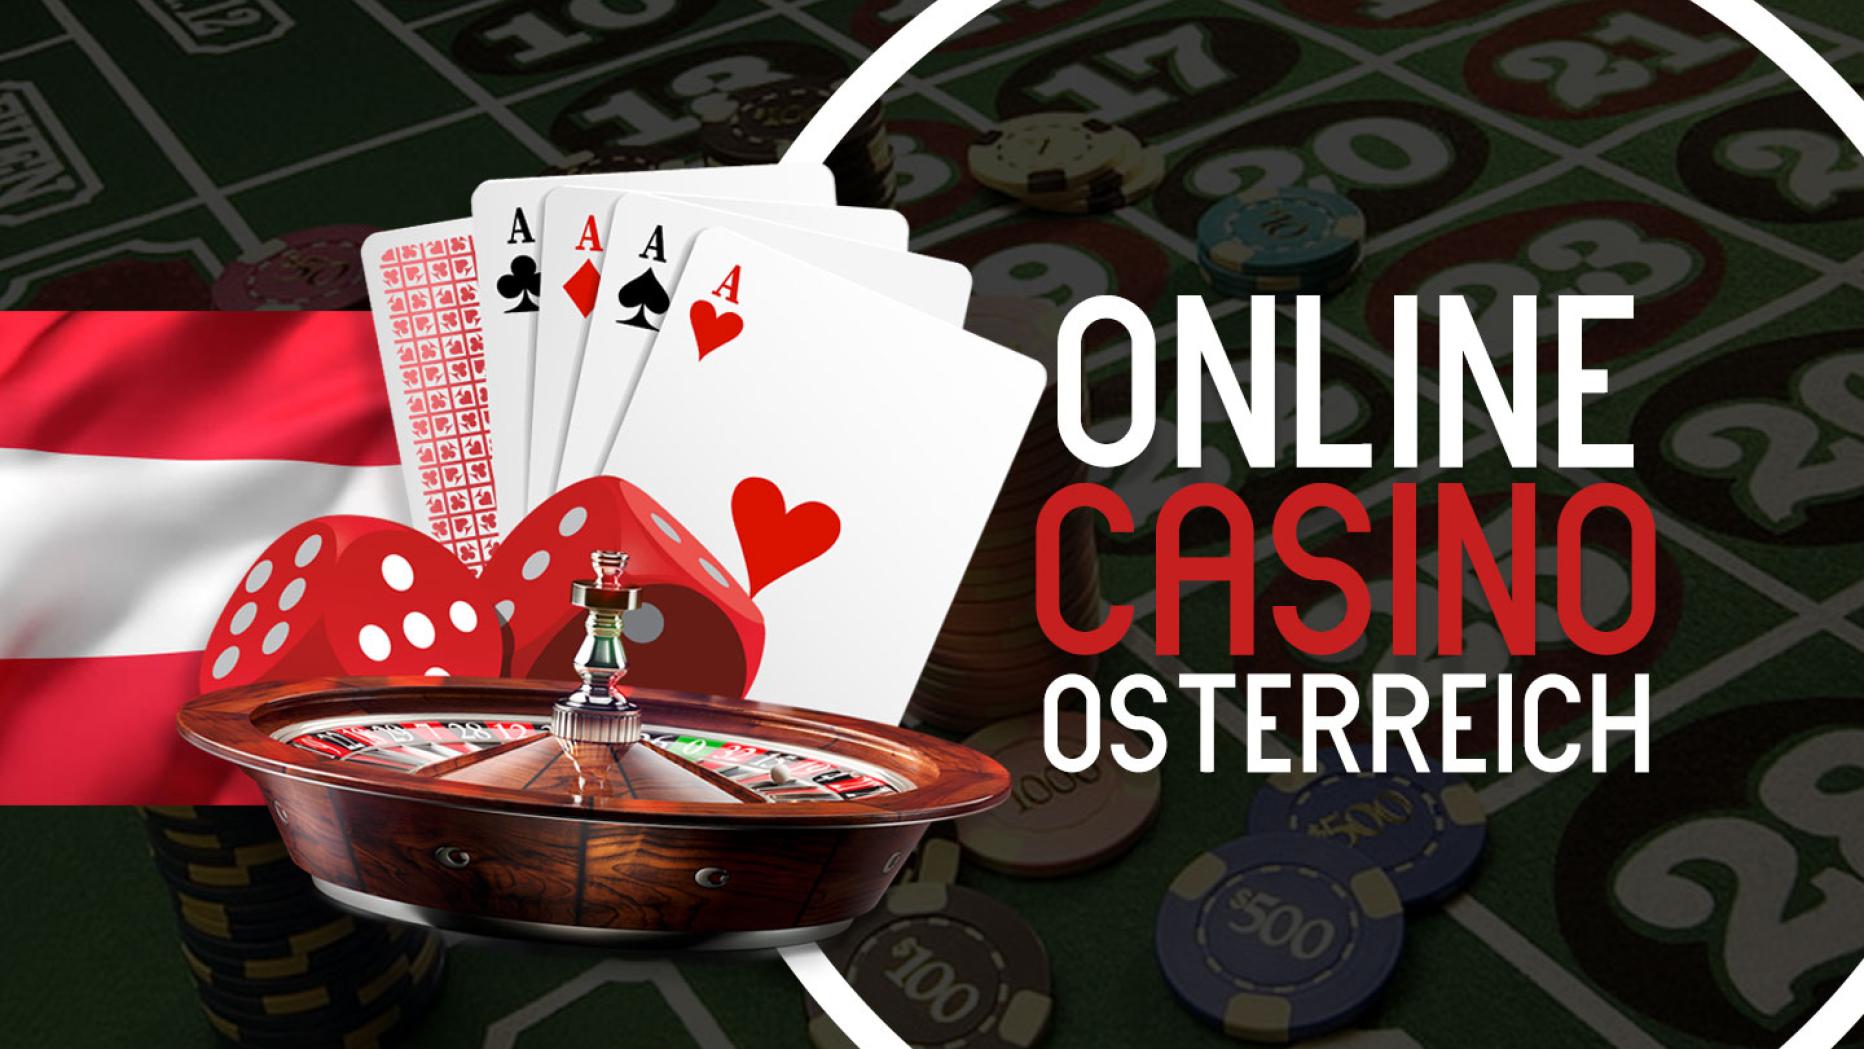 Online Casino Echtgeld spielen - Nicht für jedermann